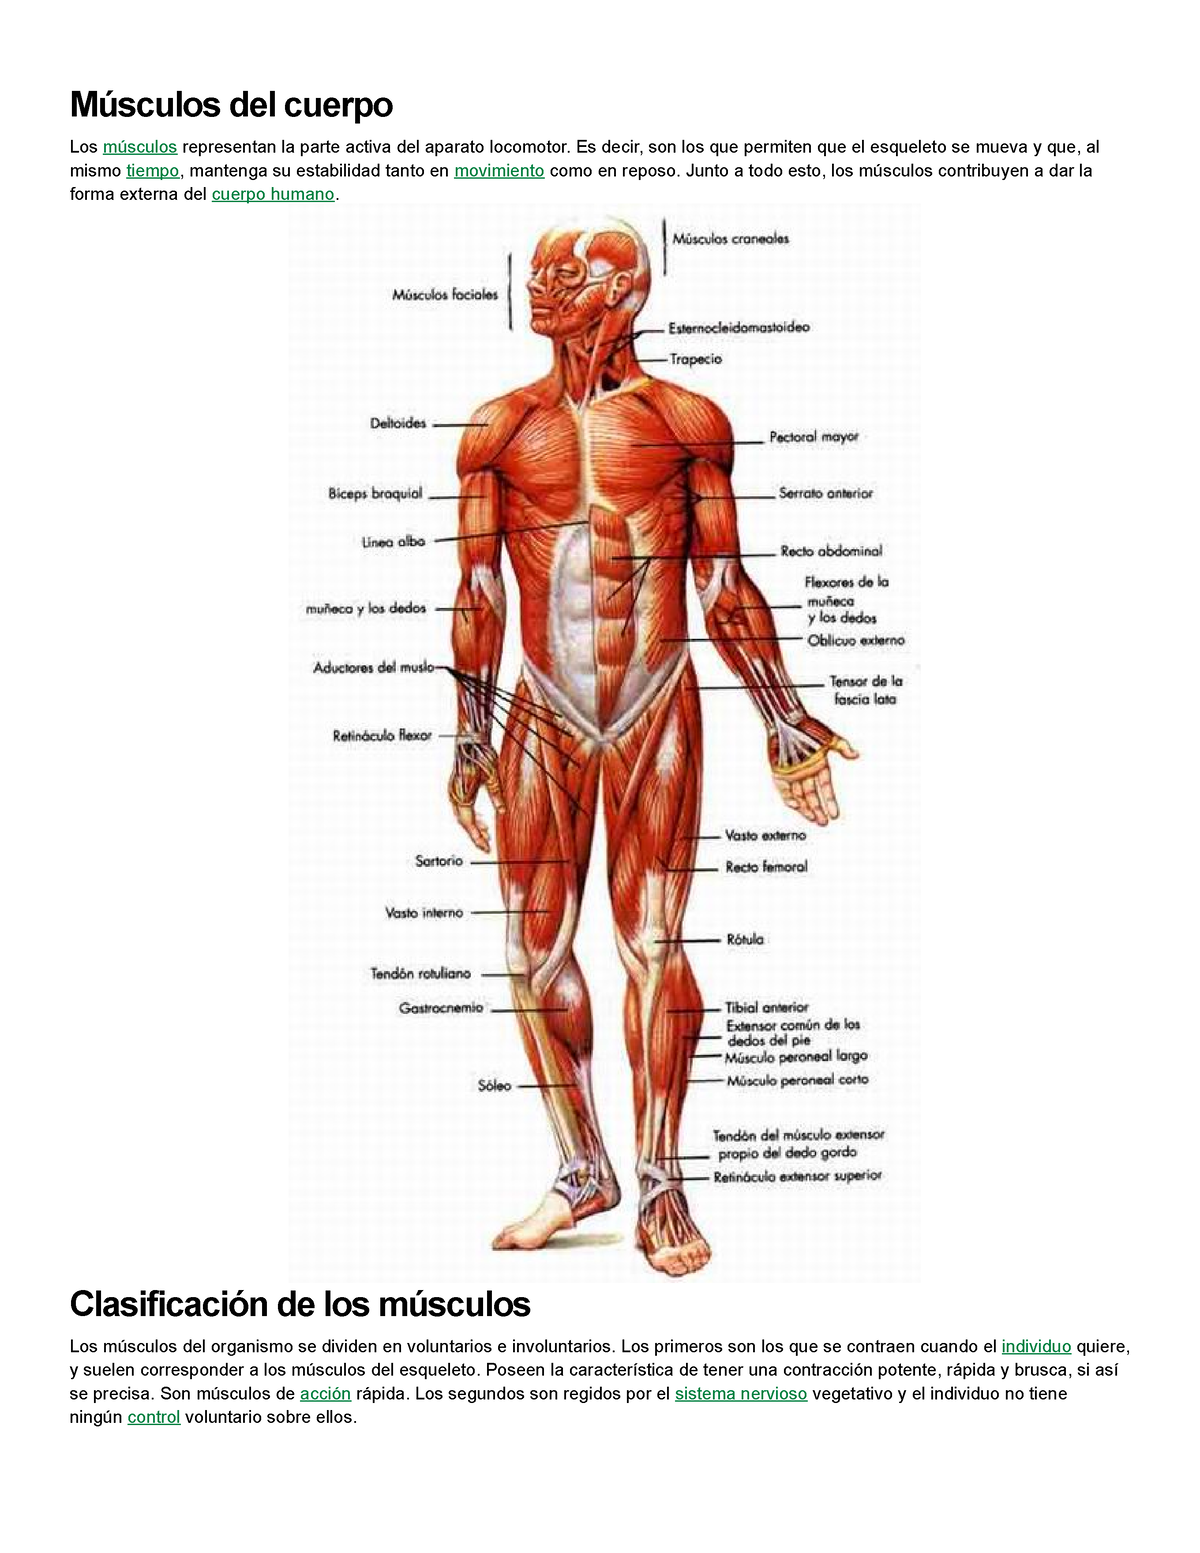 Musculos Del Cuerpo Músculos Del Cuerpo Los Músculos Representan La Parte Activa Del Aparato 2909